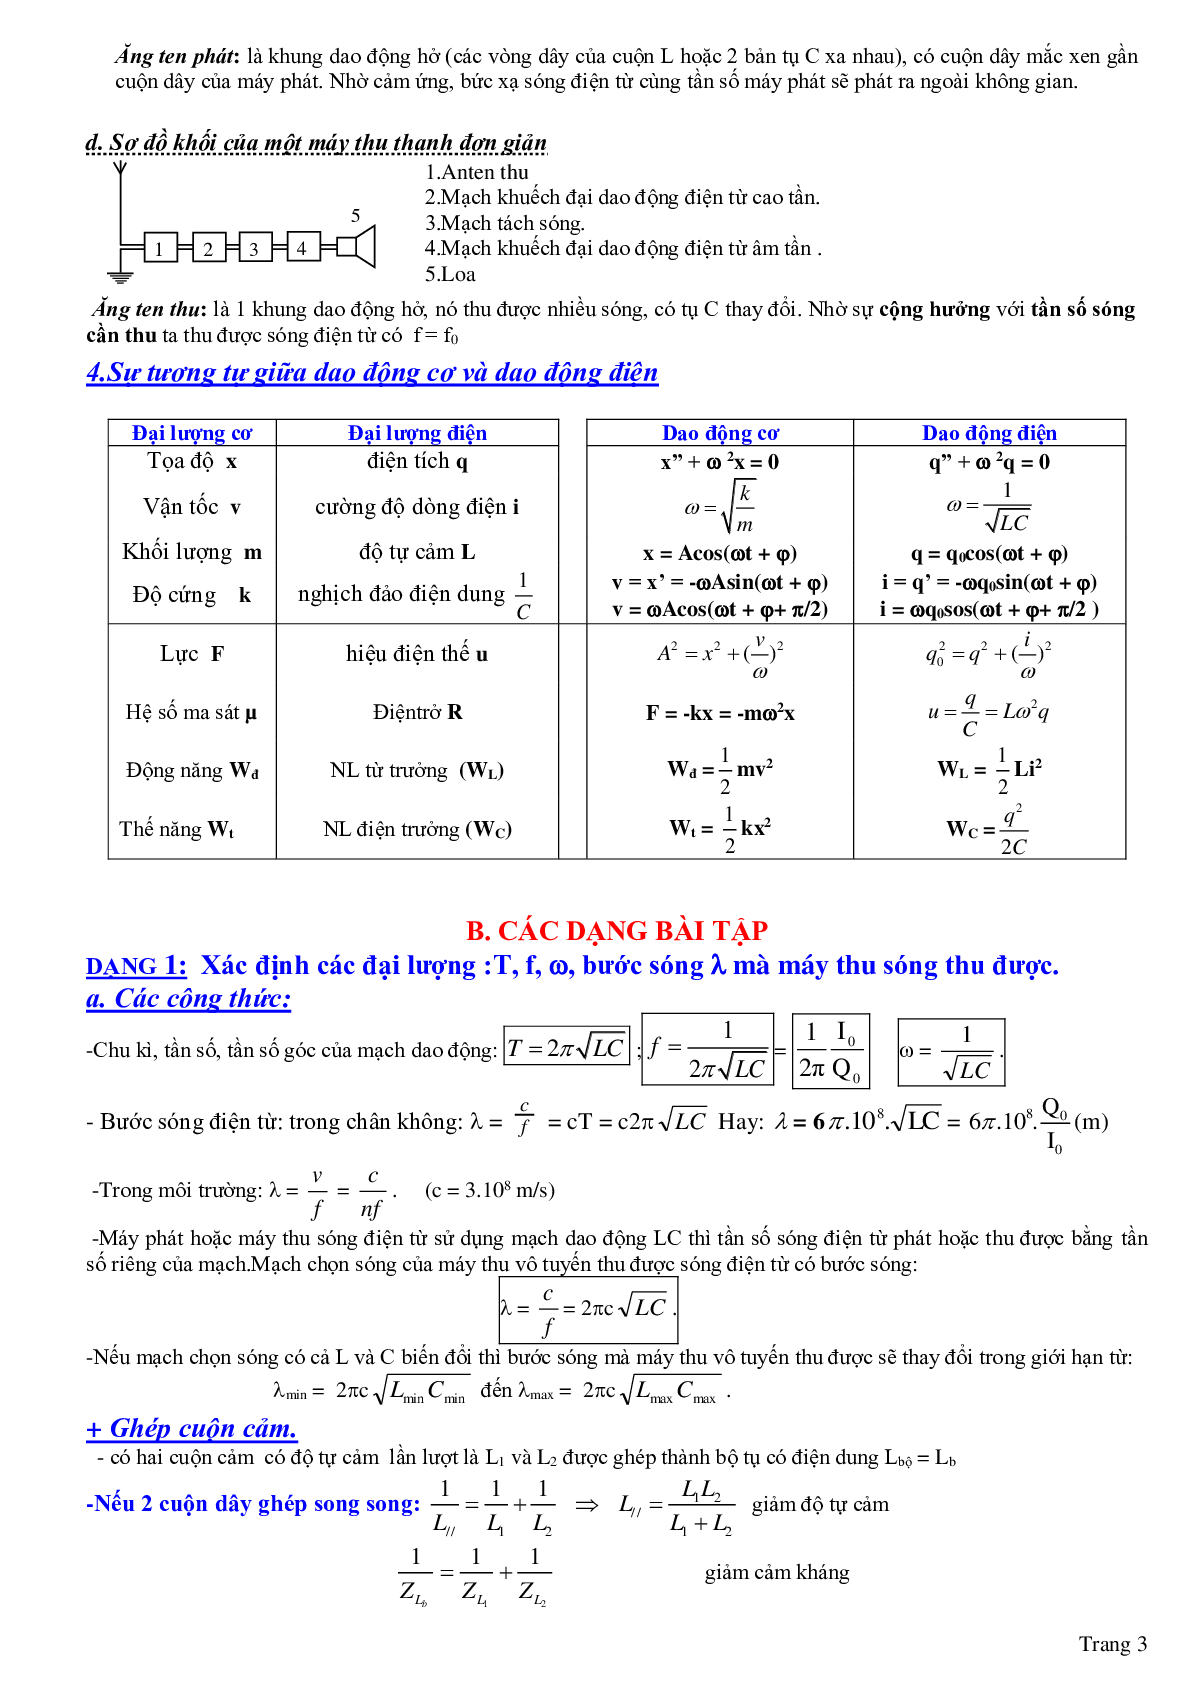 Chuyên đề: Dao động và sóng điện từ môn Vật lý lớp 12 (trang 3)